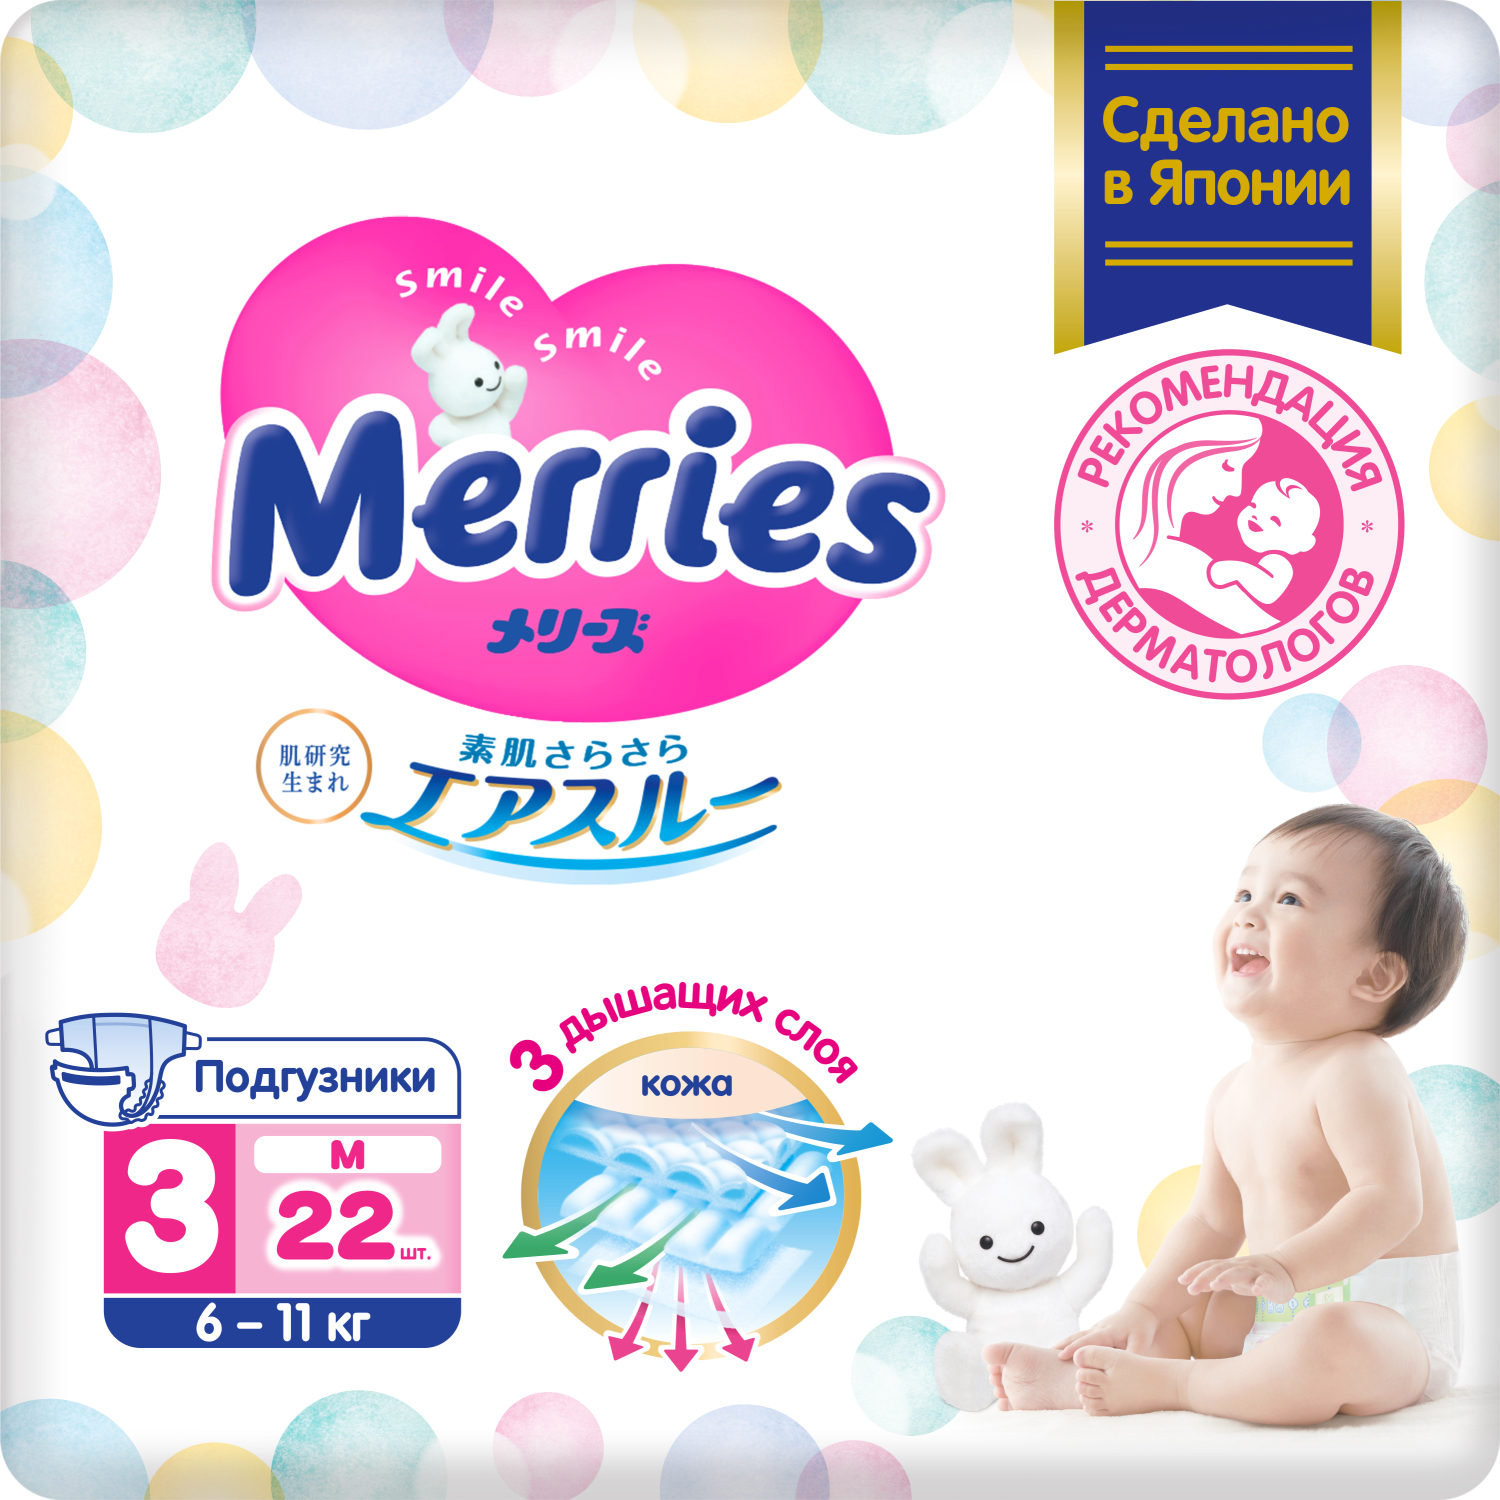 цена Подгузники Merries для детей размер M 6-11 кг 22 шт